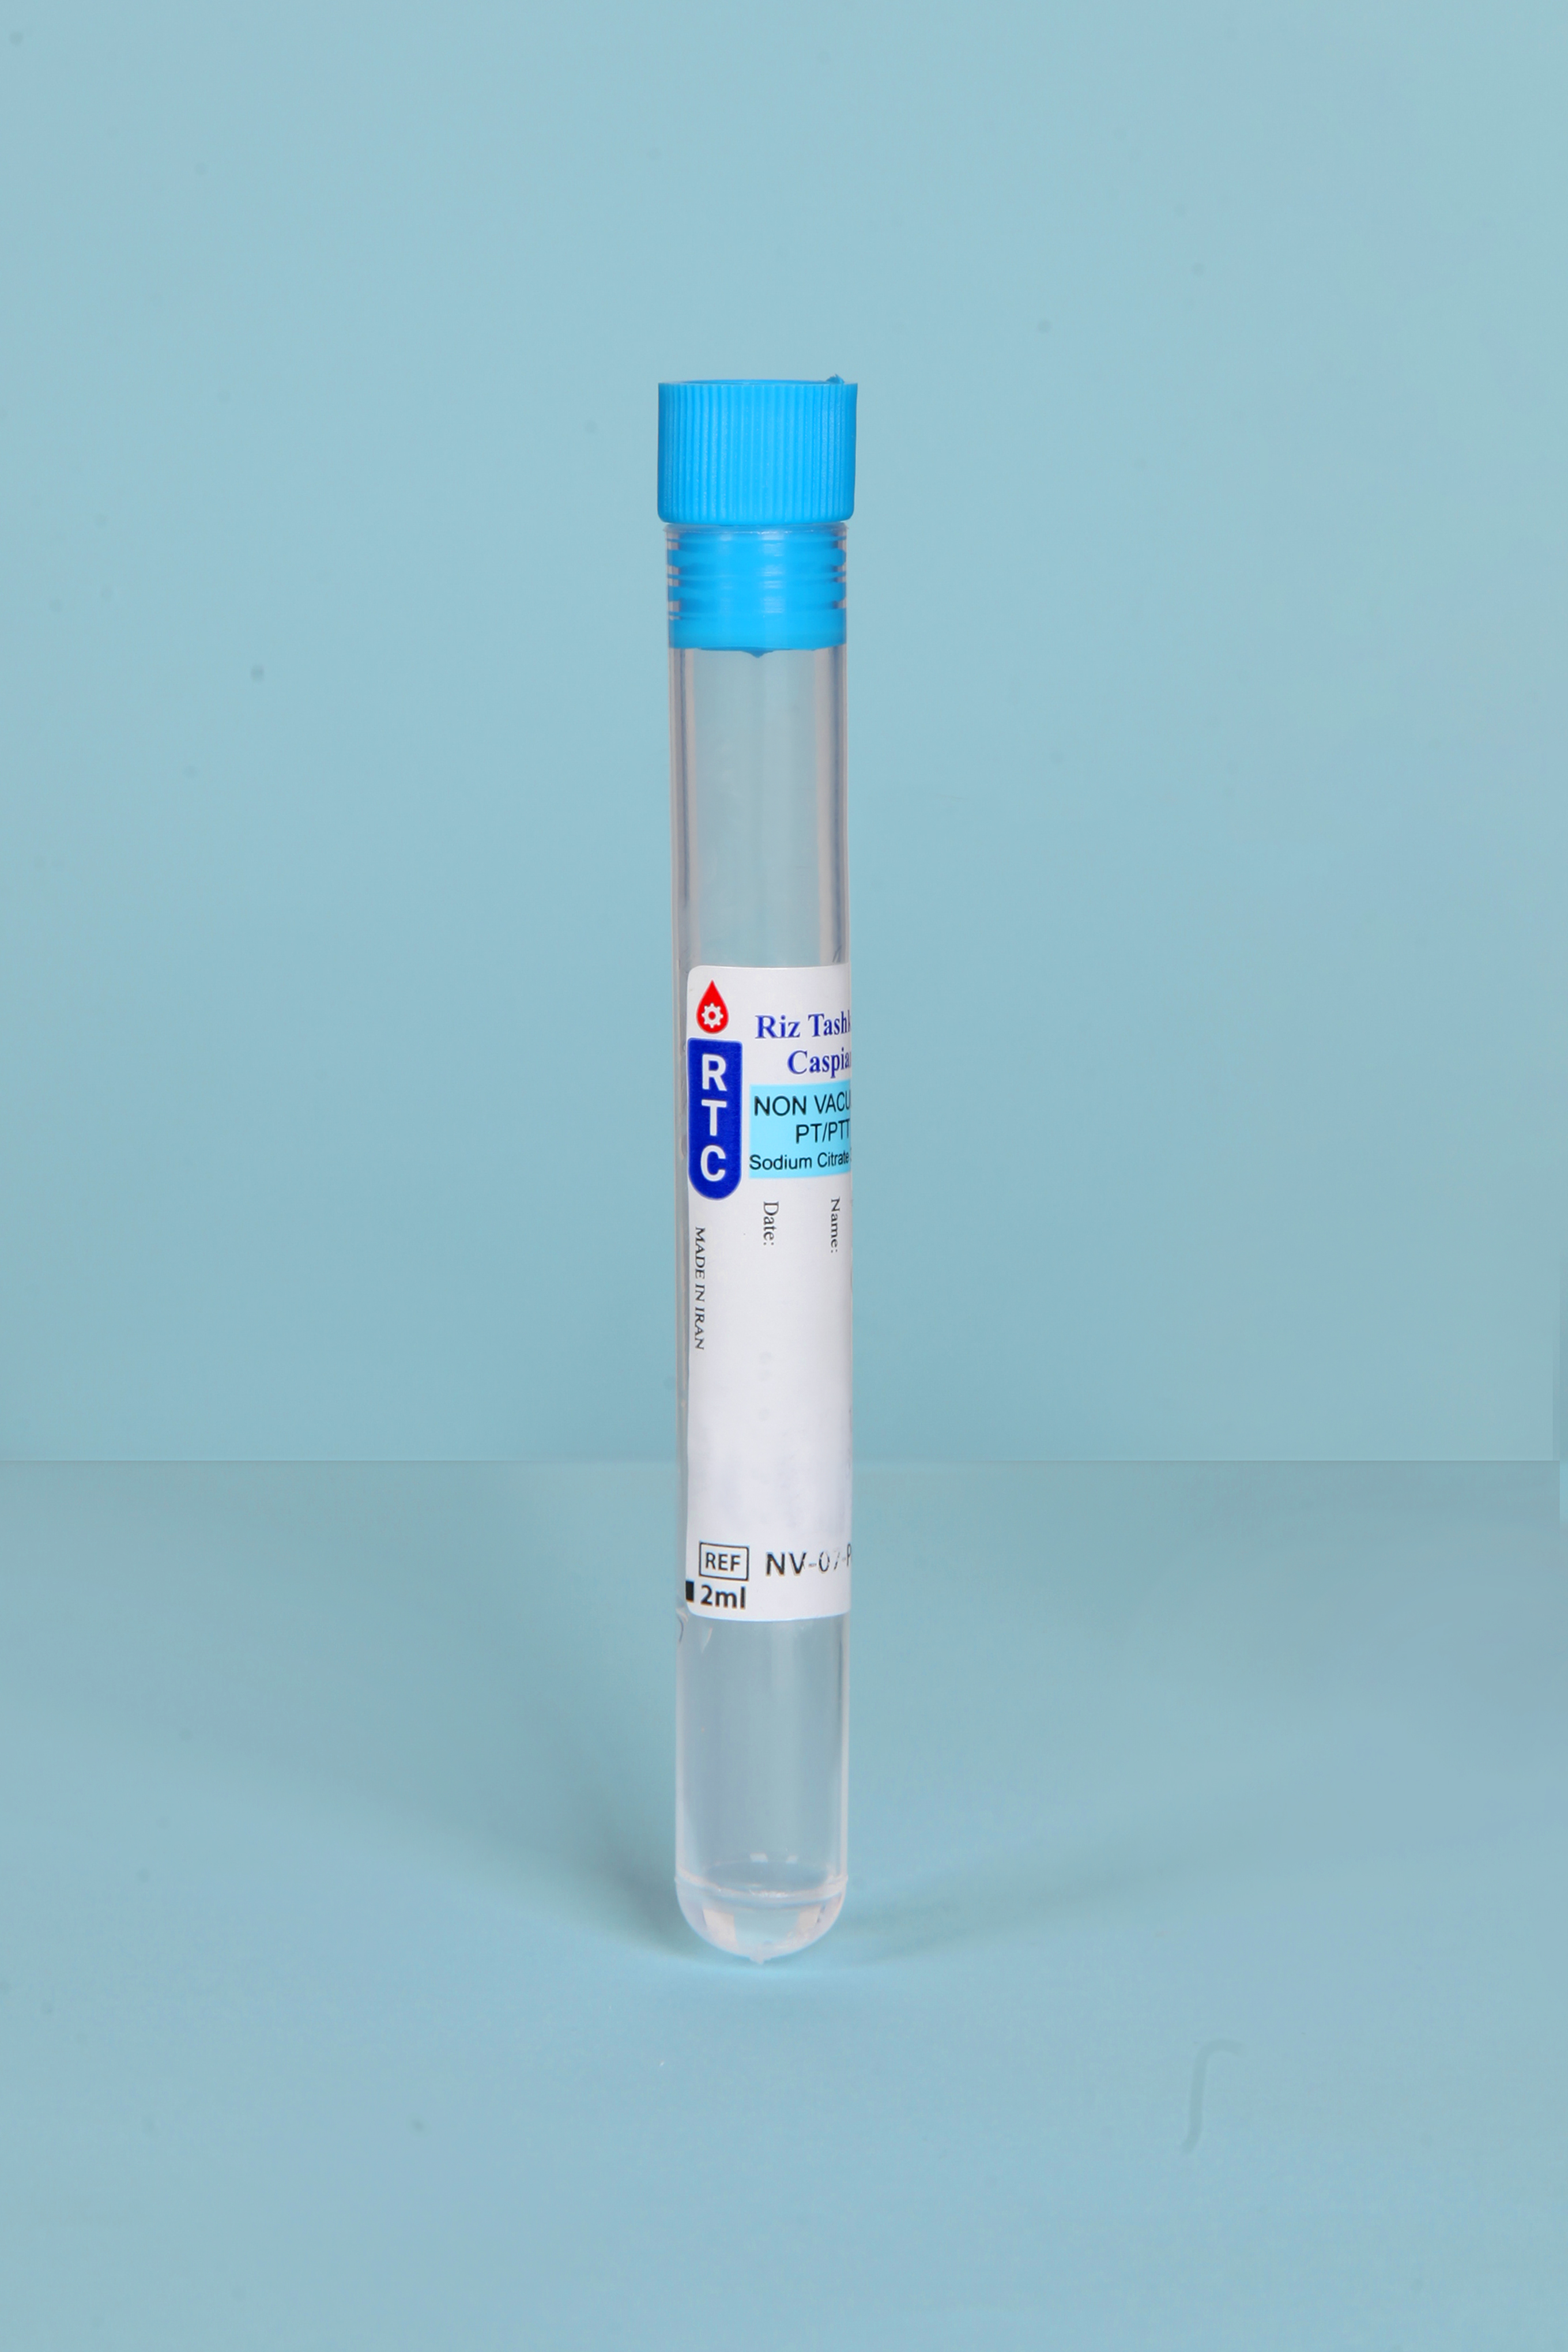 لوله خون گیری حاوی PT (بدون خلاء)- 2ml - Non Vacuum Blood Collection Test Tube  PT- 2ml - RTC - مصرفی - هماتولوژی و بانک خون - ریز تشخیص کاسپین